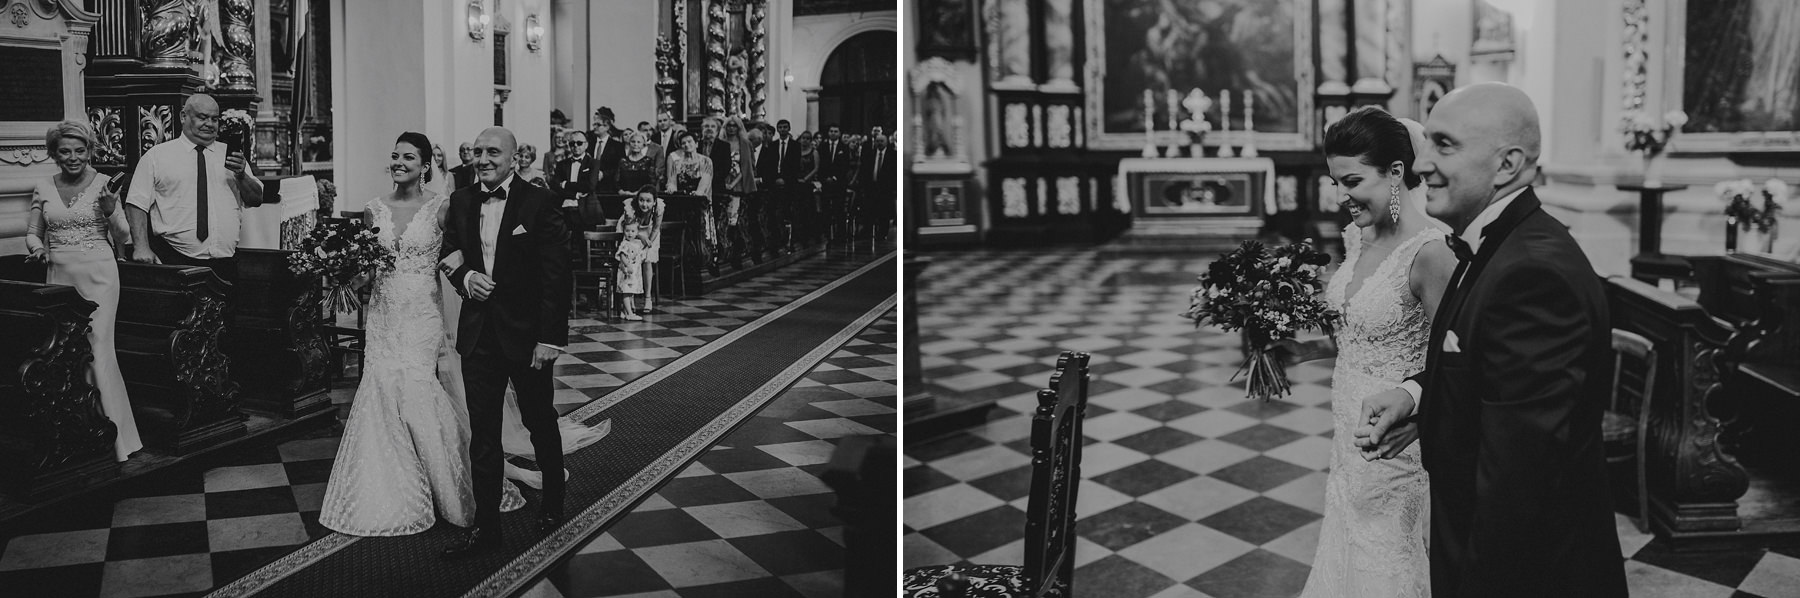 129 wesele dwor w tomaszowicach krakow slub wawel fotograf slubny karol nycz wedding photography poland